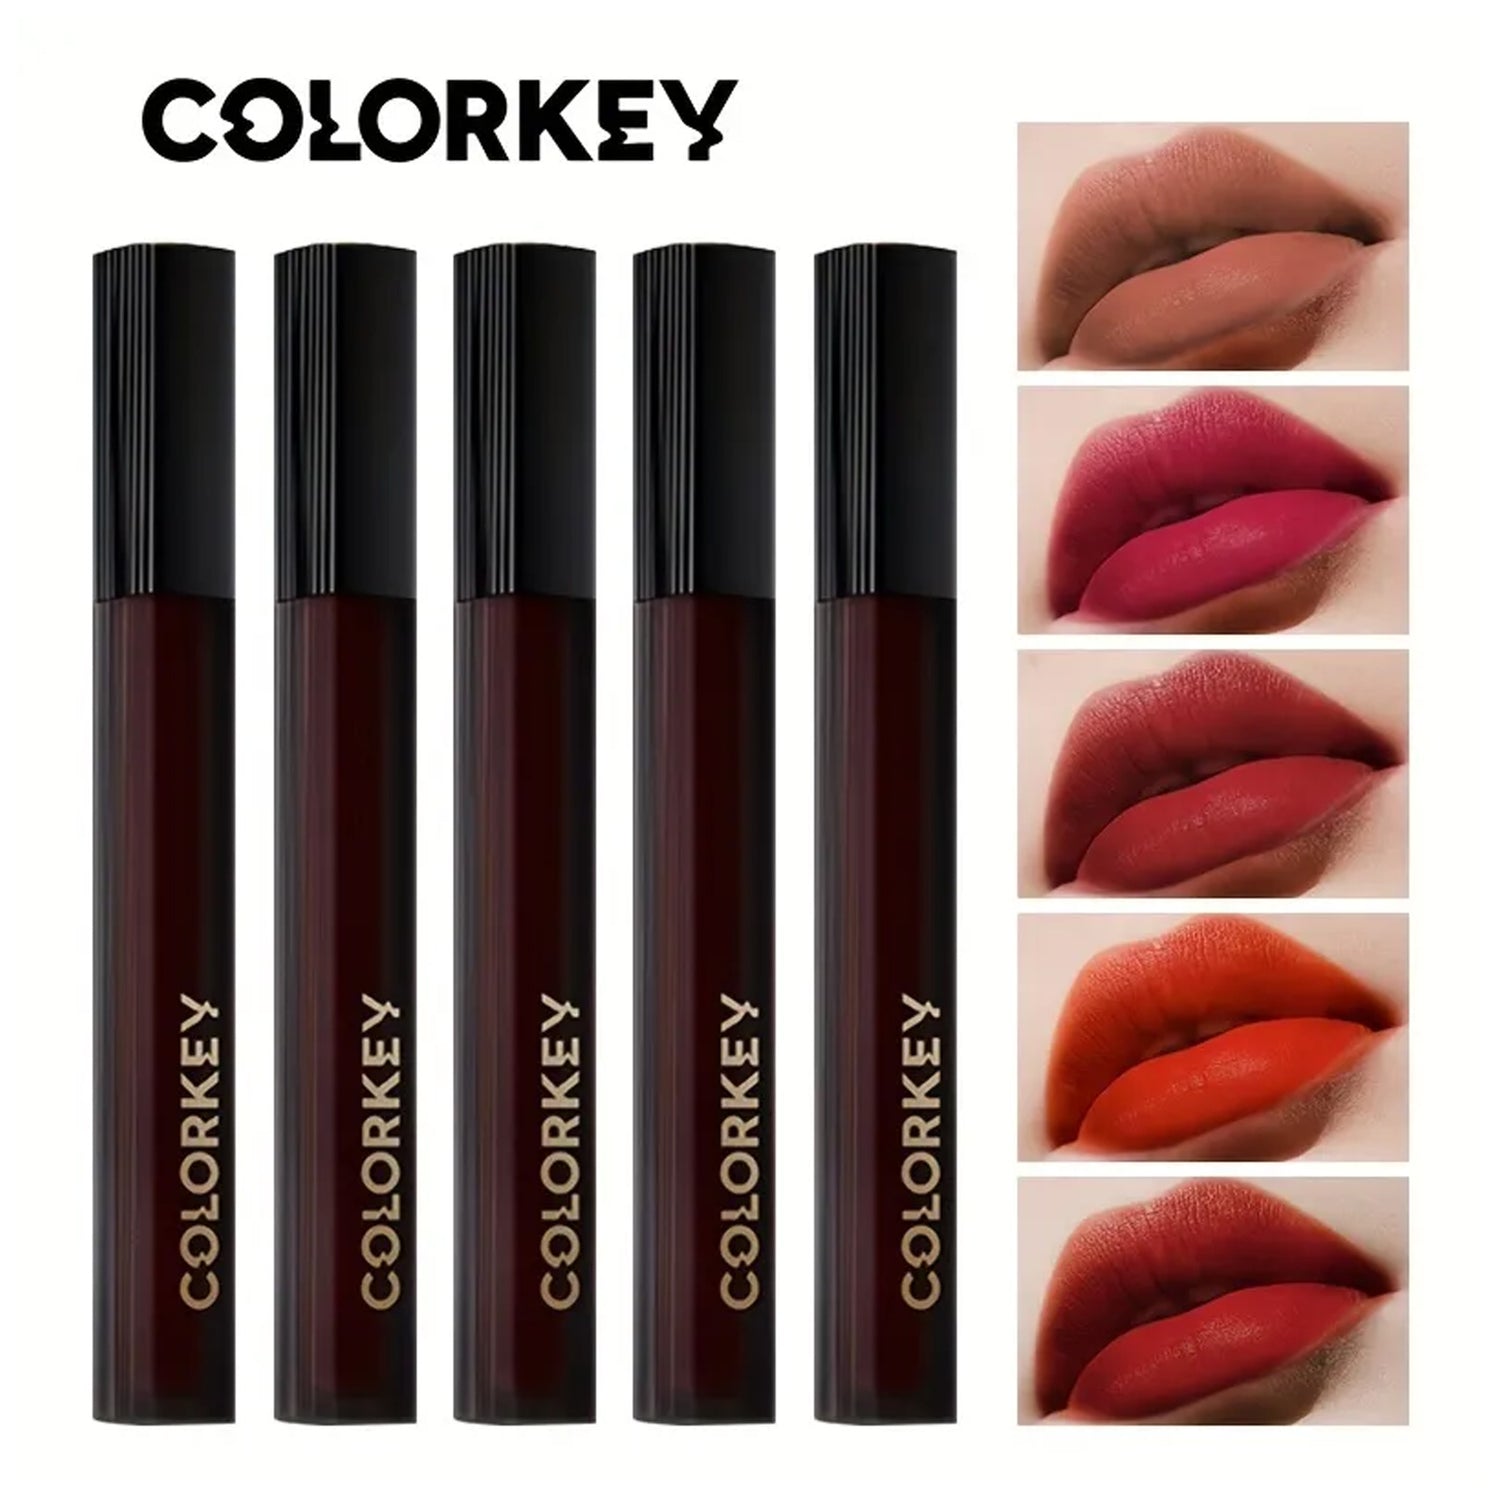 COLORKEY Moist Velvet Silk Satin Lip Gloss-11 Colors